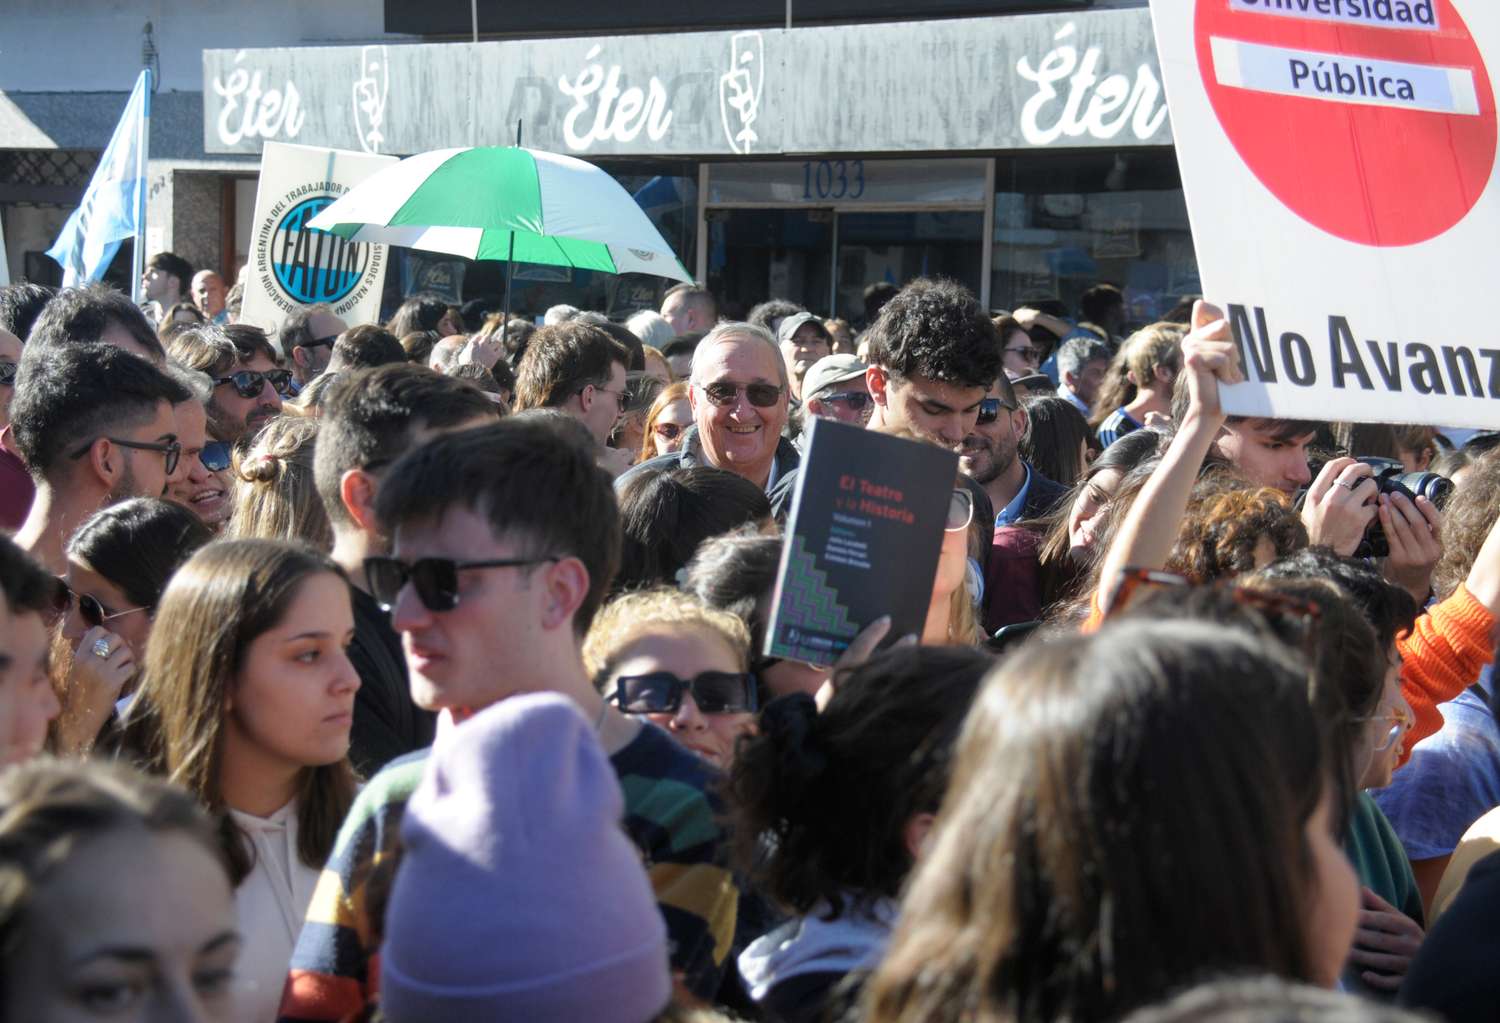 El intendente encabezó la columna de la Franja Morada, sector radical universitario, durante la marcha educativa de este martes.